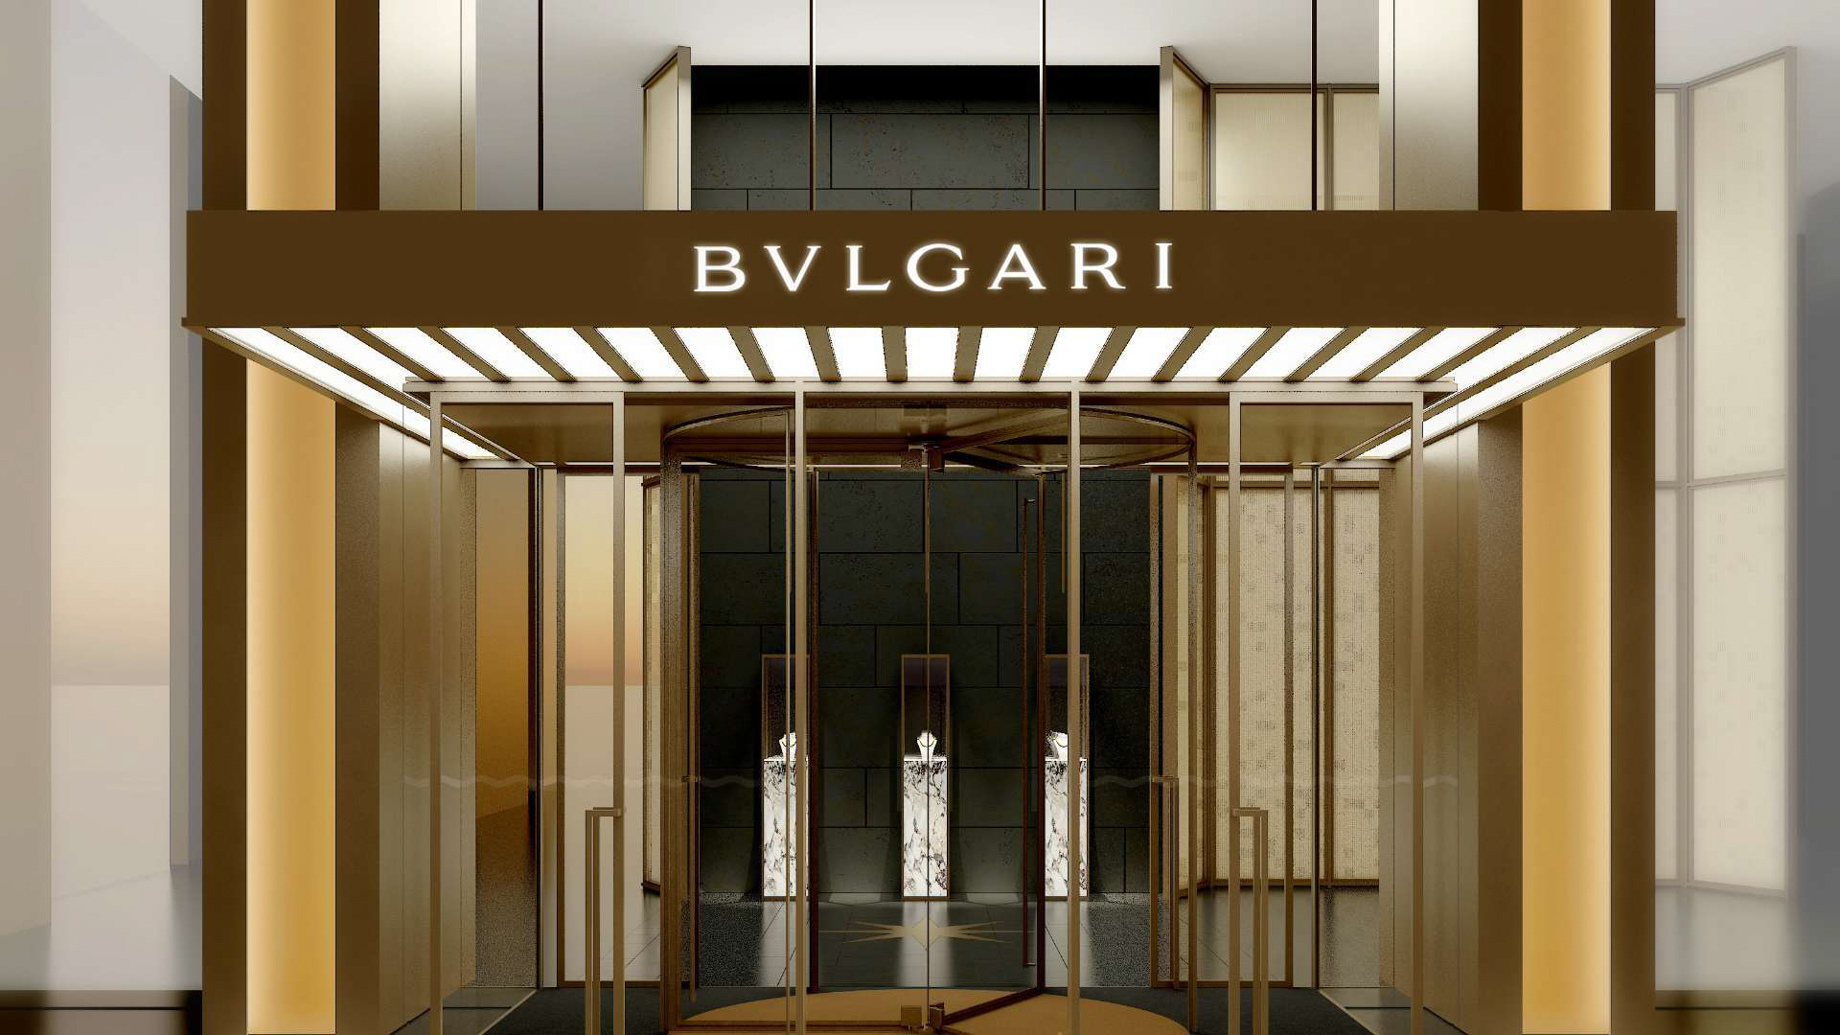 Bvlgari Hotel Shanghai – Shanghai, China – Bvlgari Entrance